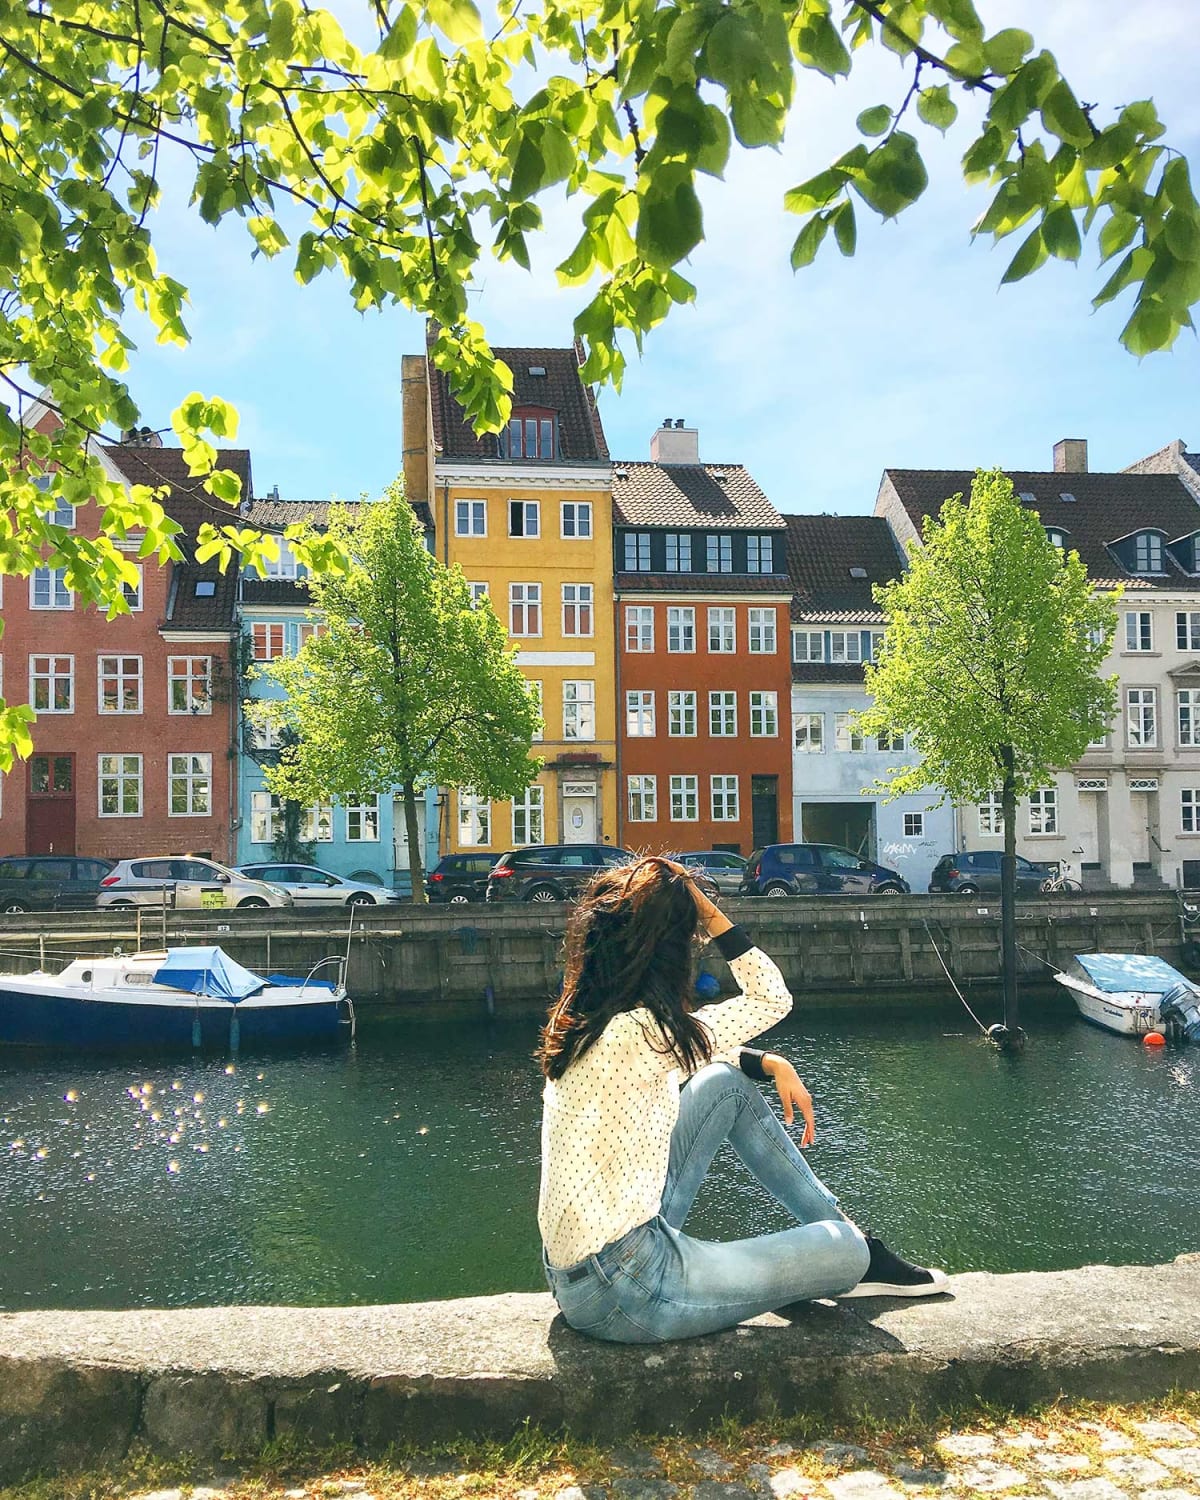 21 Copenhagen Museums that Show the Unique Beauty of Denmark